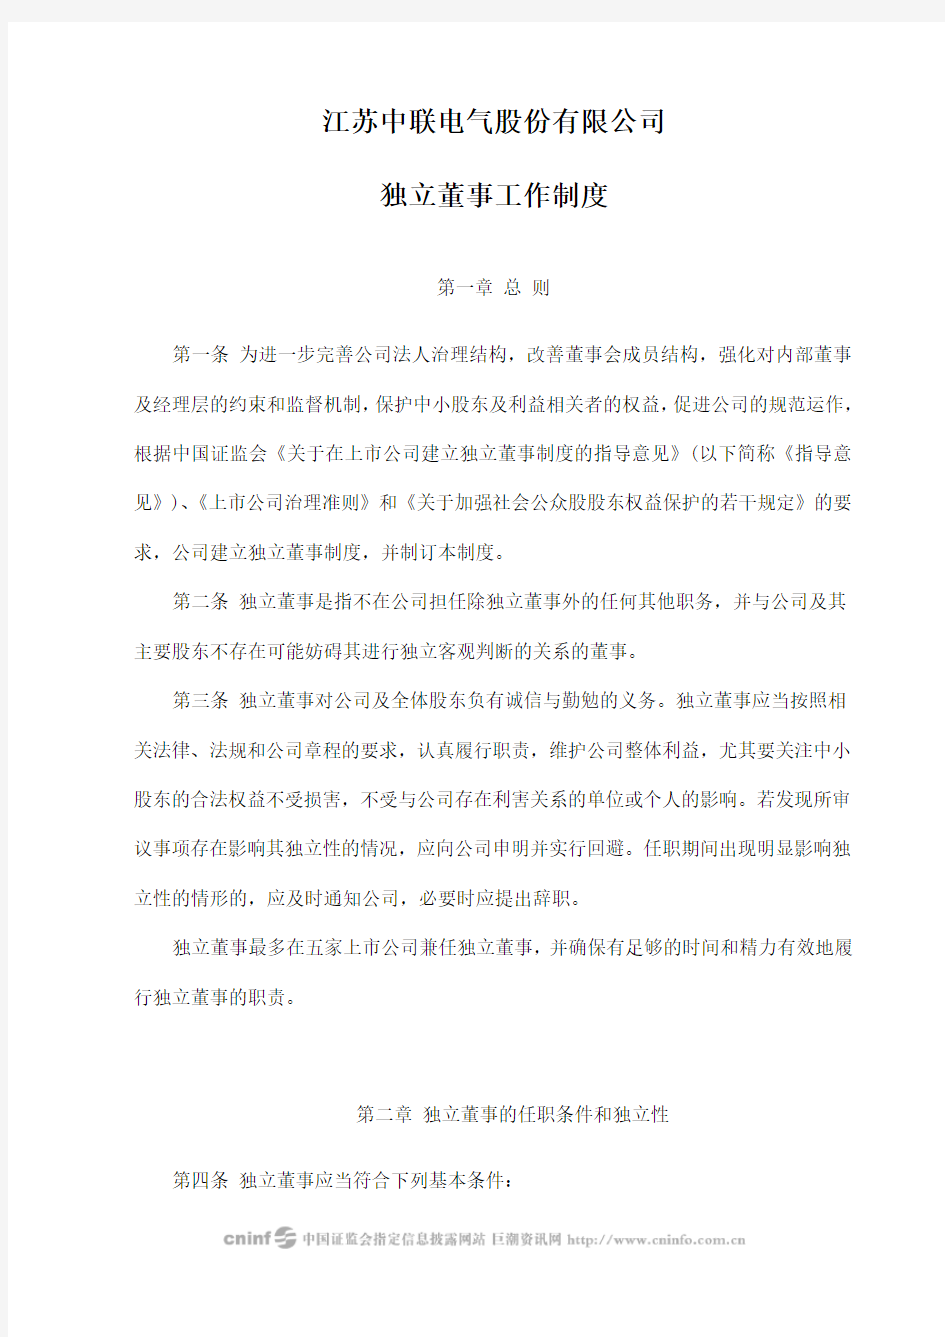 中联电气：独立董事工作制度(2010年1月) 2010-02-01